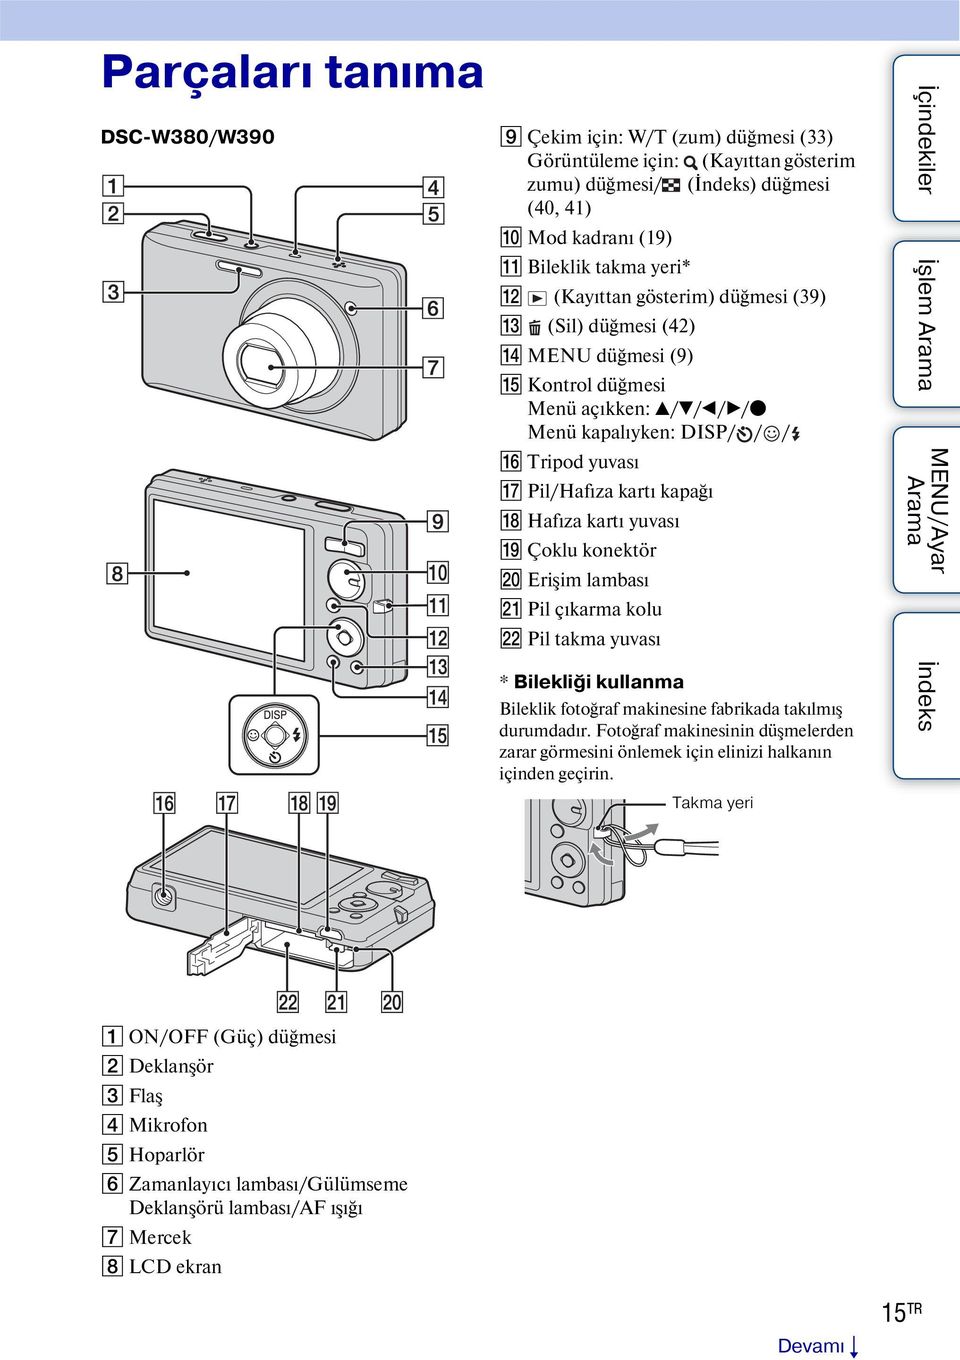 Çoklu konektör T Erişim lambası U Pil çıkarma kolu V Pil takma yuvası * Bilekliği kullanma Bileklik fotoğraf makinesine fabrikada takılmış durumdadır.